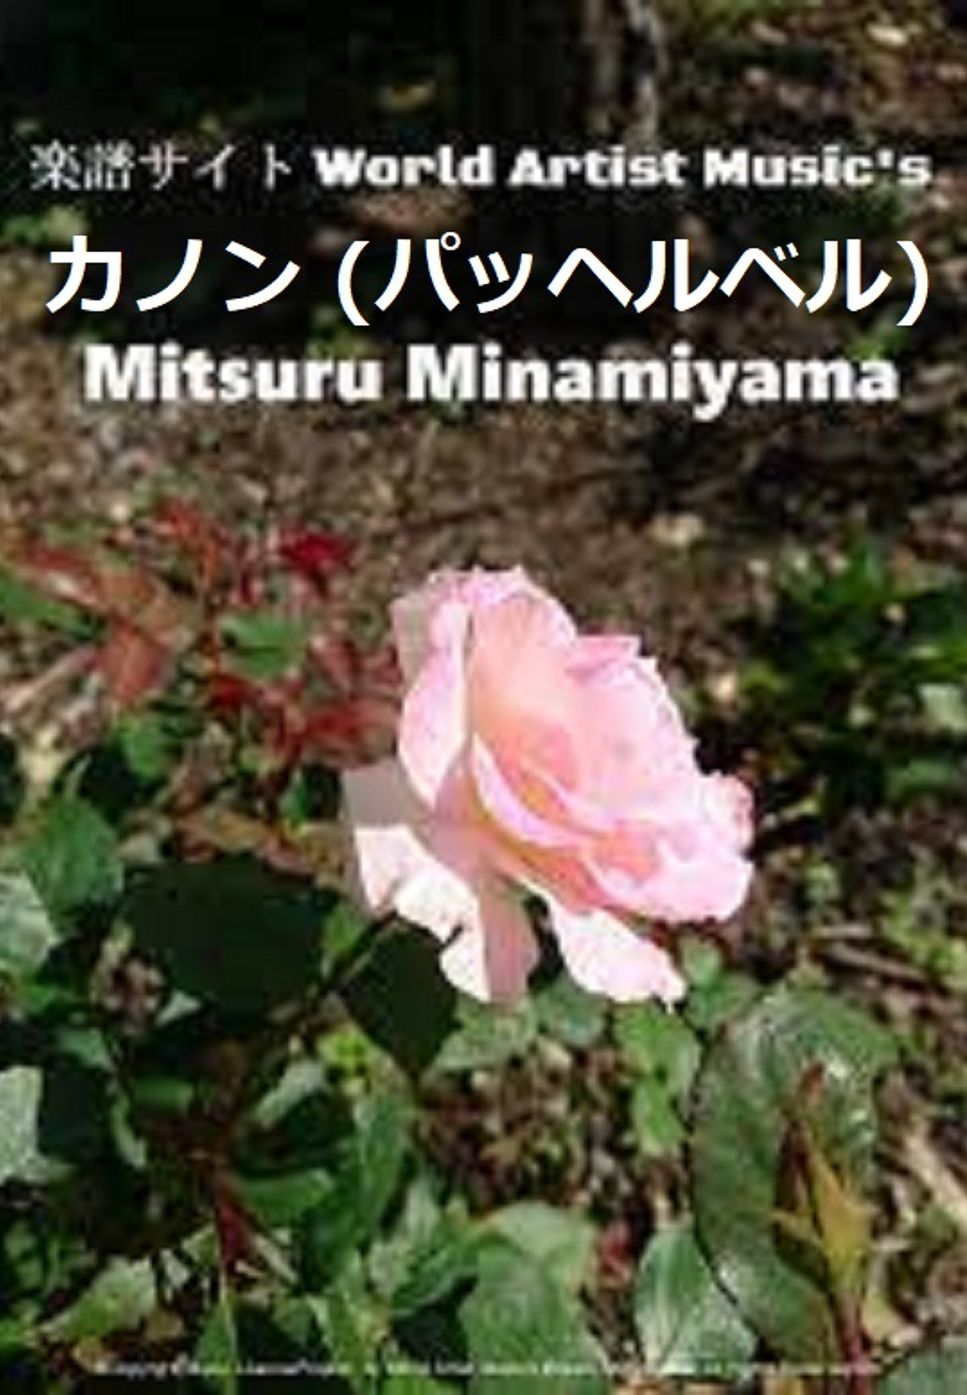 チェリッシュ - てんとう虫のサンバ (作詞:さいとう大三,作曲:馬飼野俊一) by @MitsuruMinamiyama